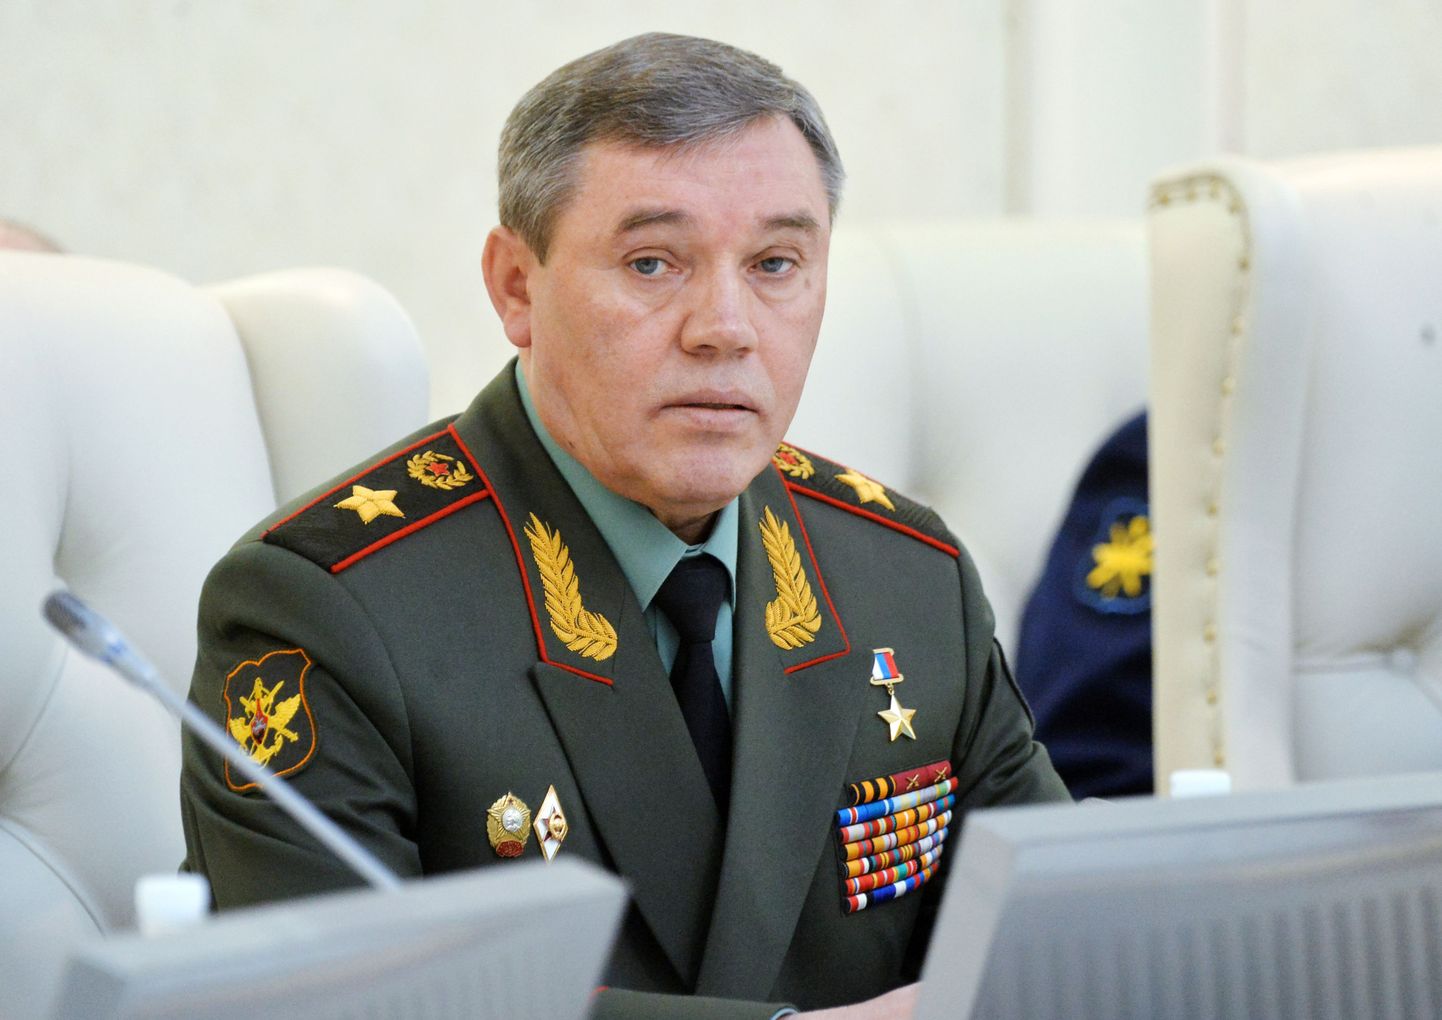 Vene kindral Valeri Gerassimov